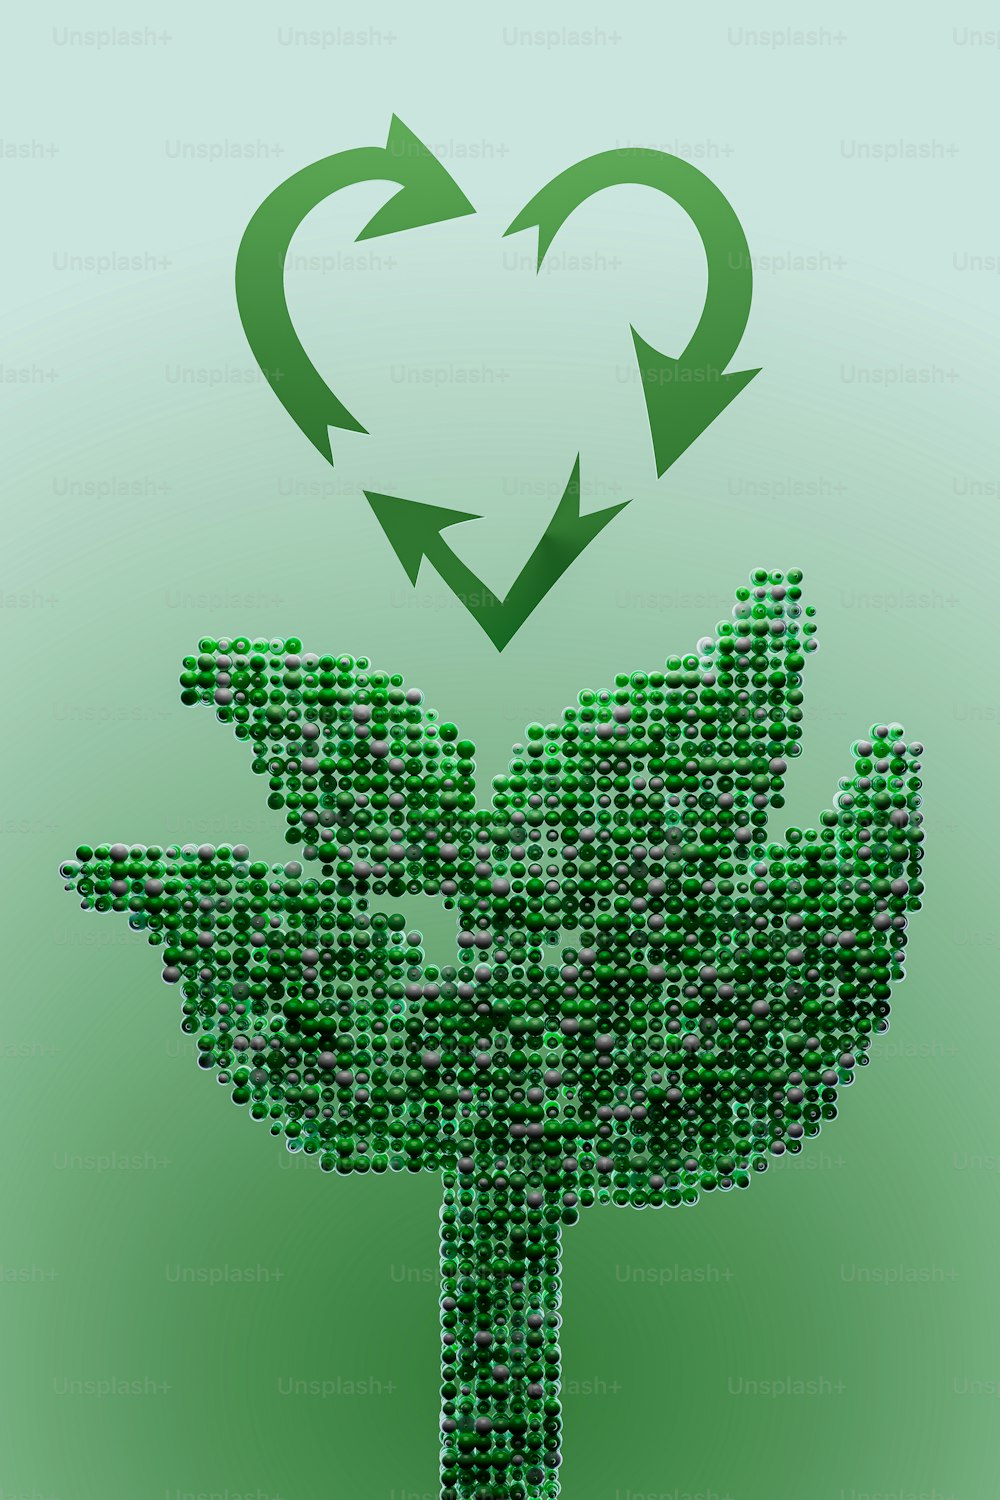 Una imagen de una planta verde con una flecha en forma de corazón